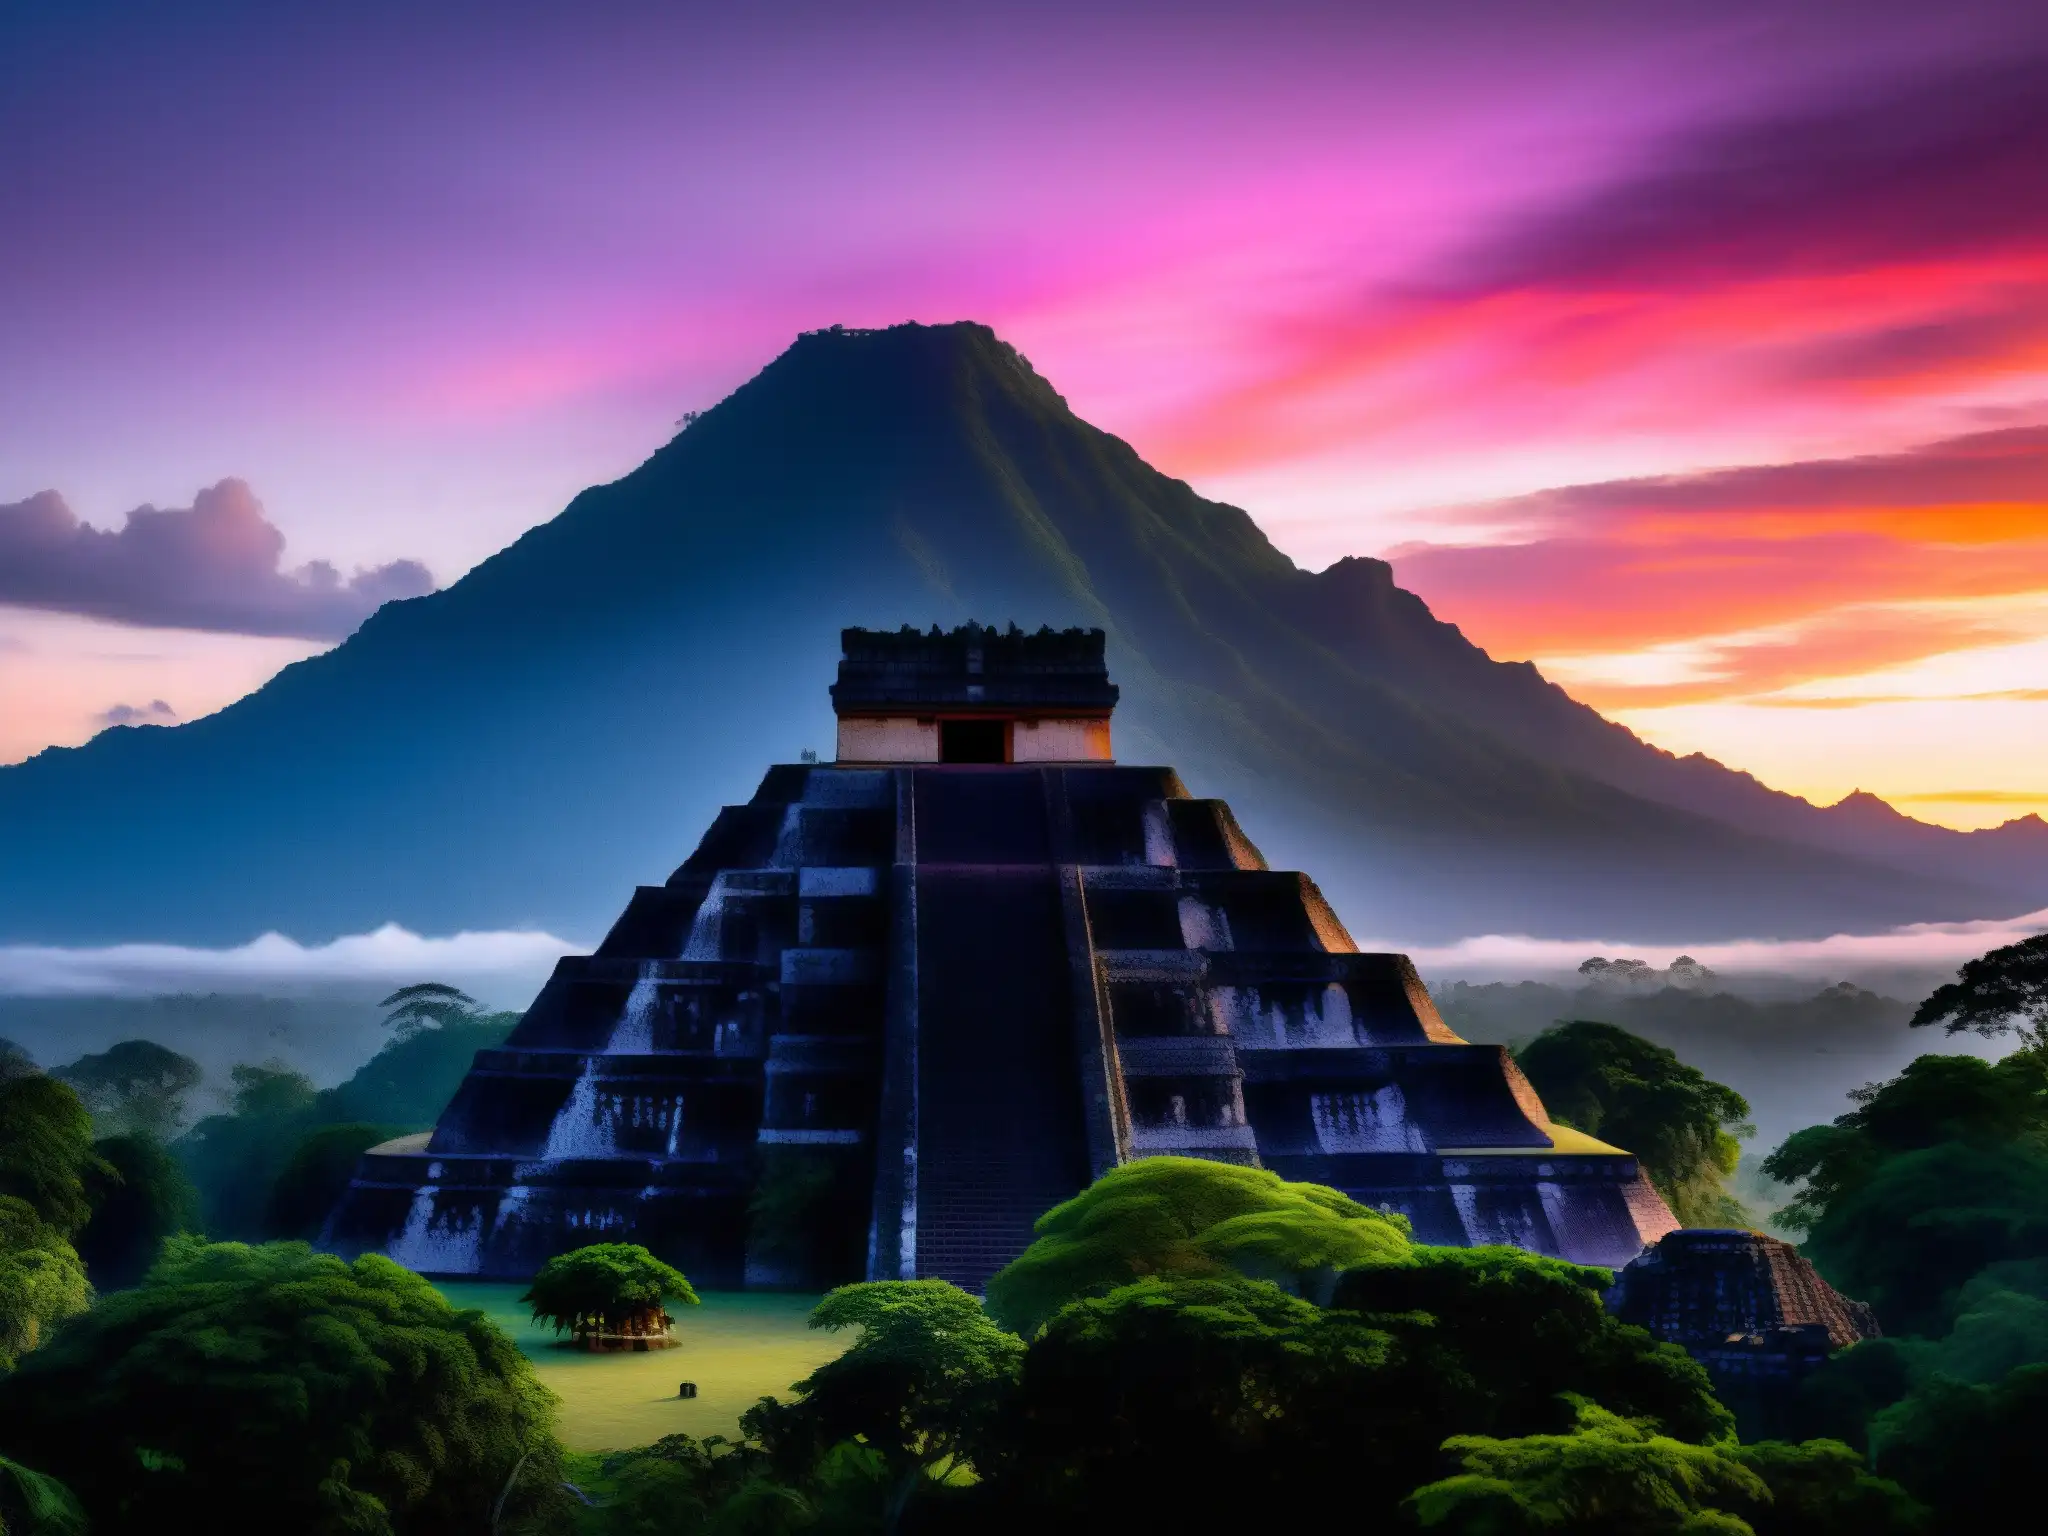 La majestuosa belleza de las montañas de Guatemala cubiertas por la niebla al amanecer, con el templo maya en primer plano